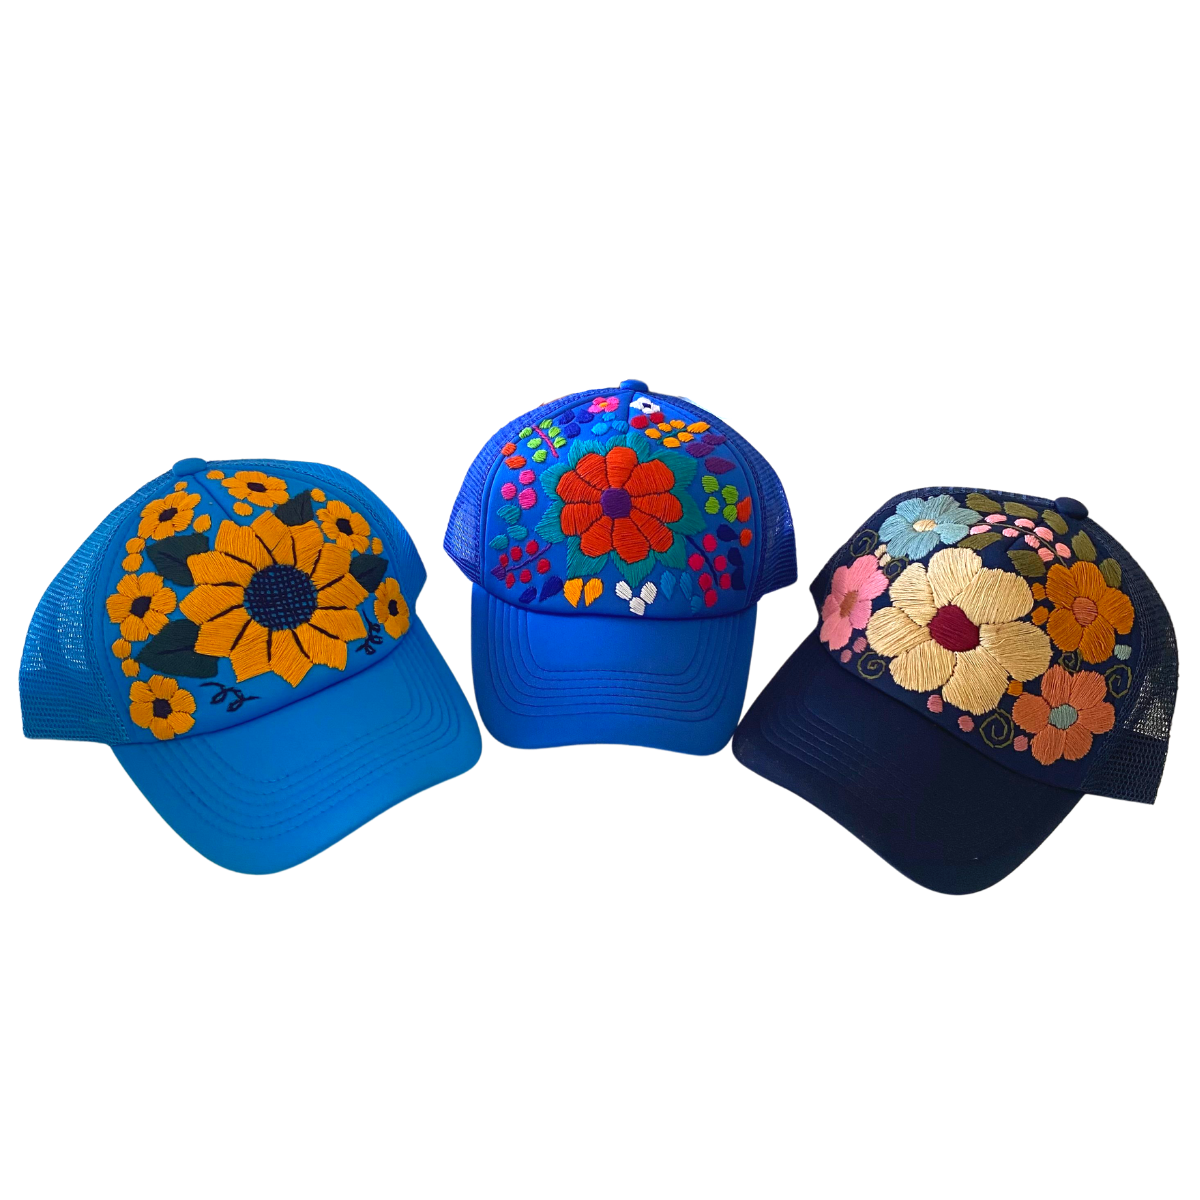 majestätisch Tulum Hand Hat Trucker Flower - – Embroidered Mexico Lumily